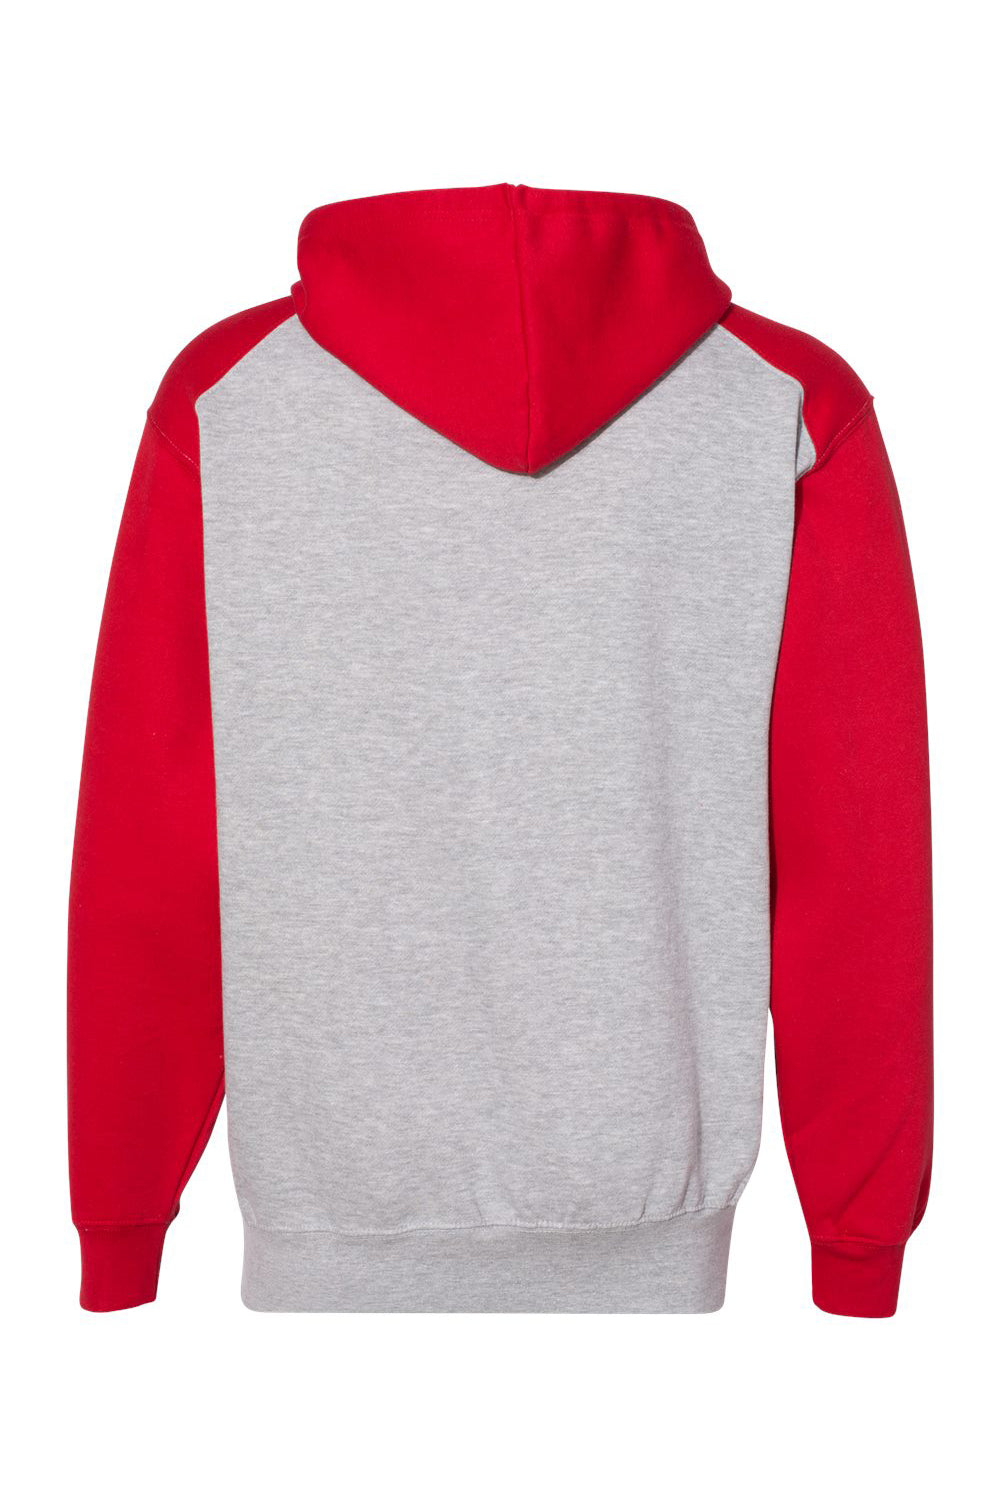 Badger 1249 Mens Athletic Fleece Hooded Sweatshirt Hoodie Oxford Grey/Red Flat Back